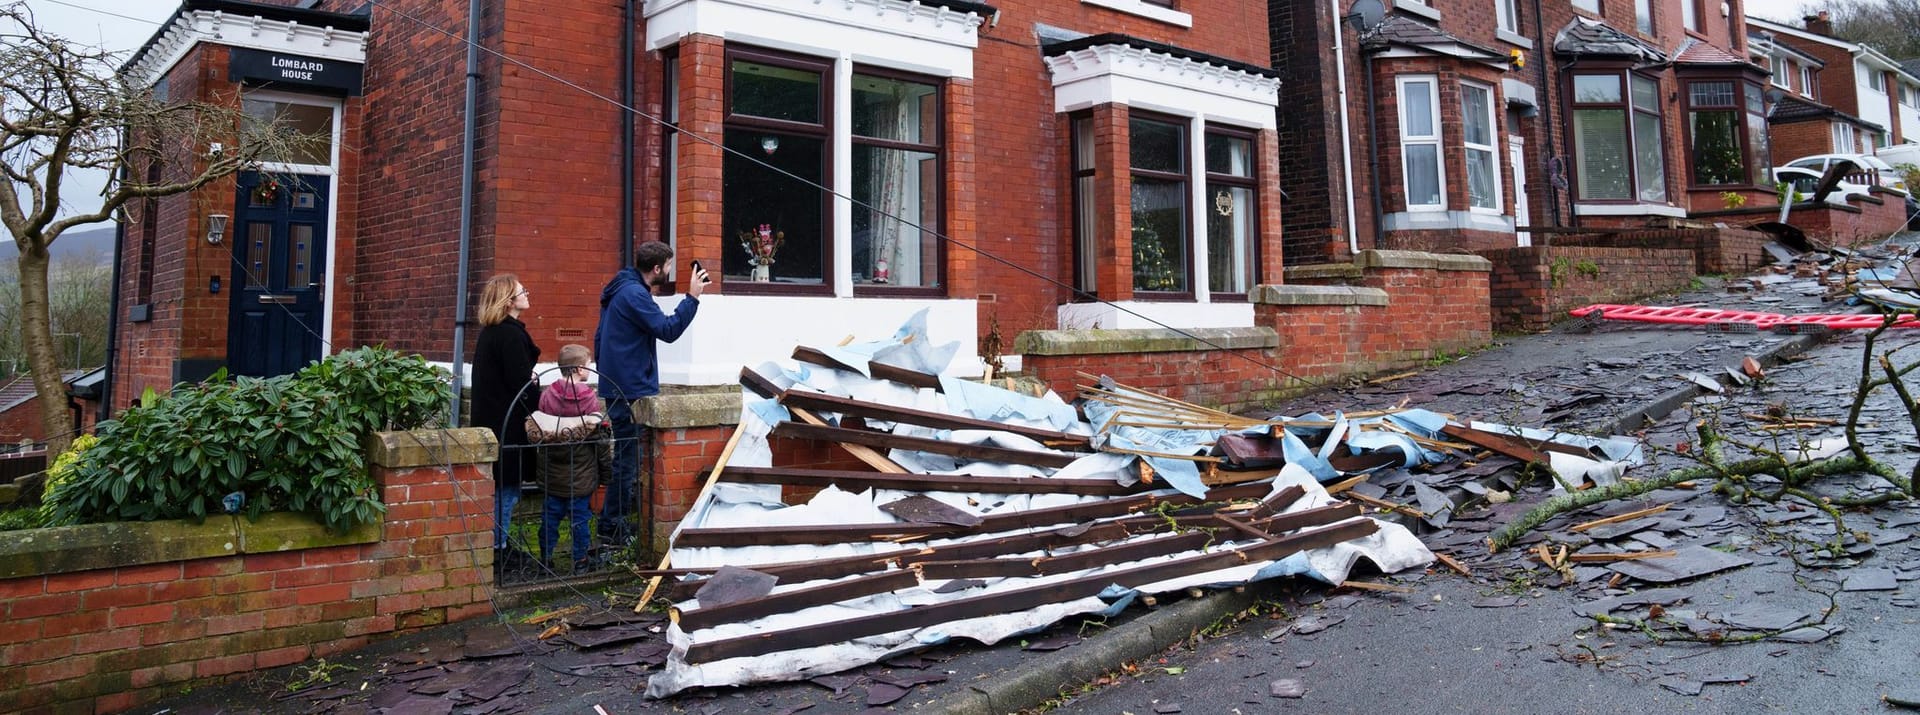 Zerstörung nach Sturm in Manchester.